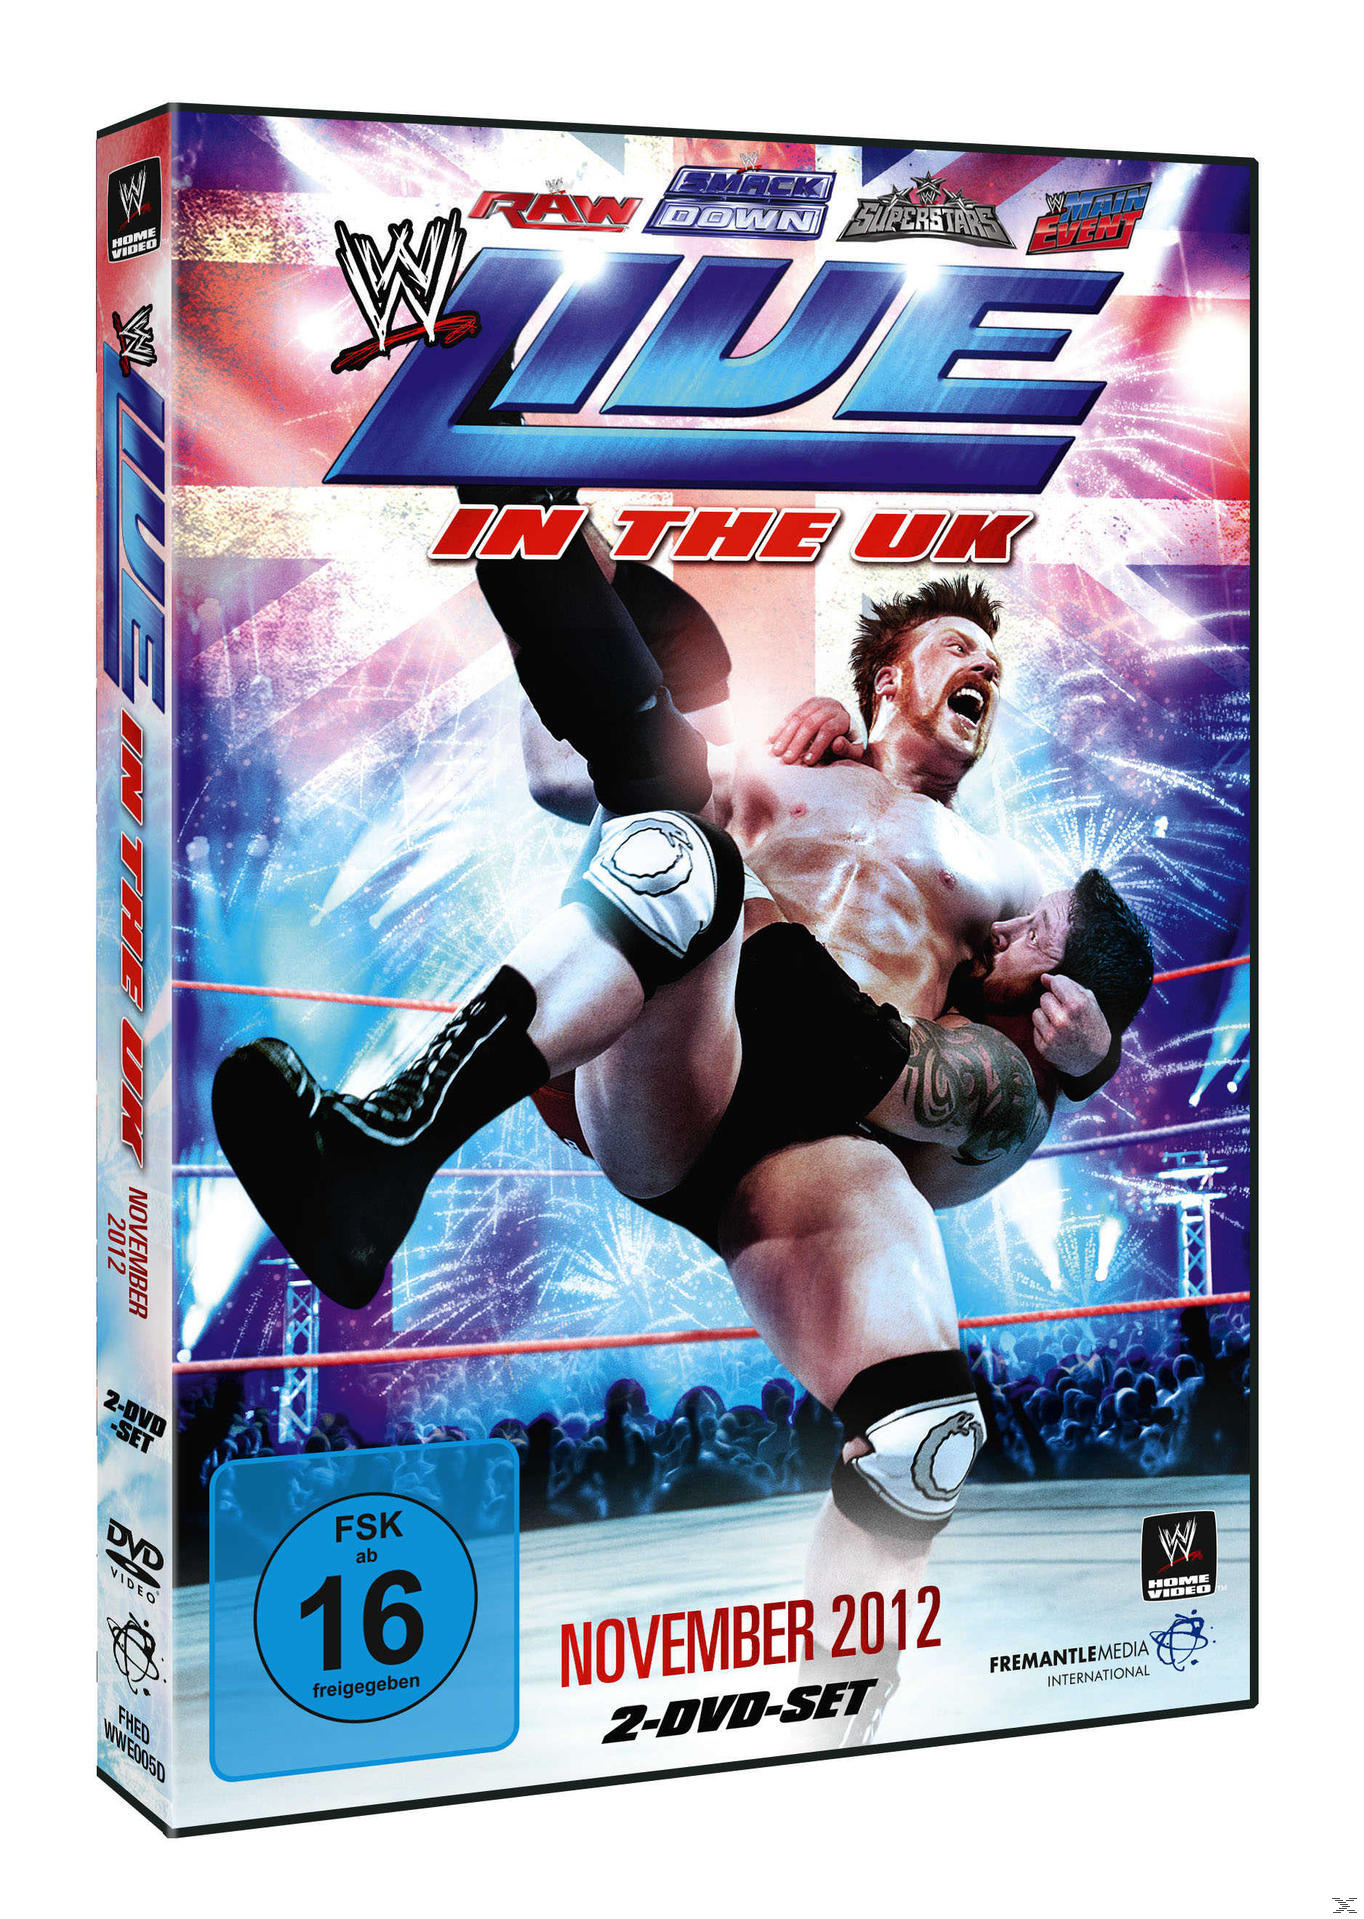 UK 2012 Live in the November DVD -